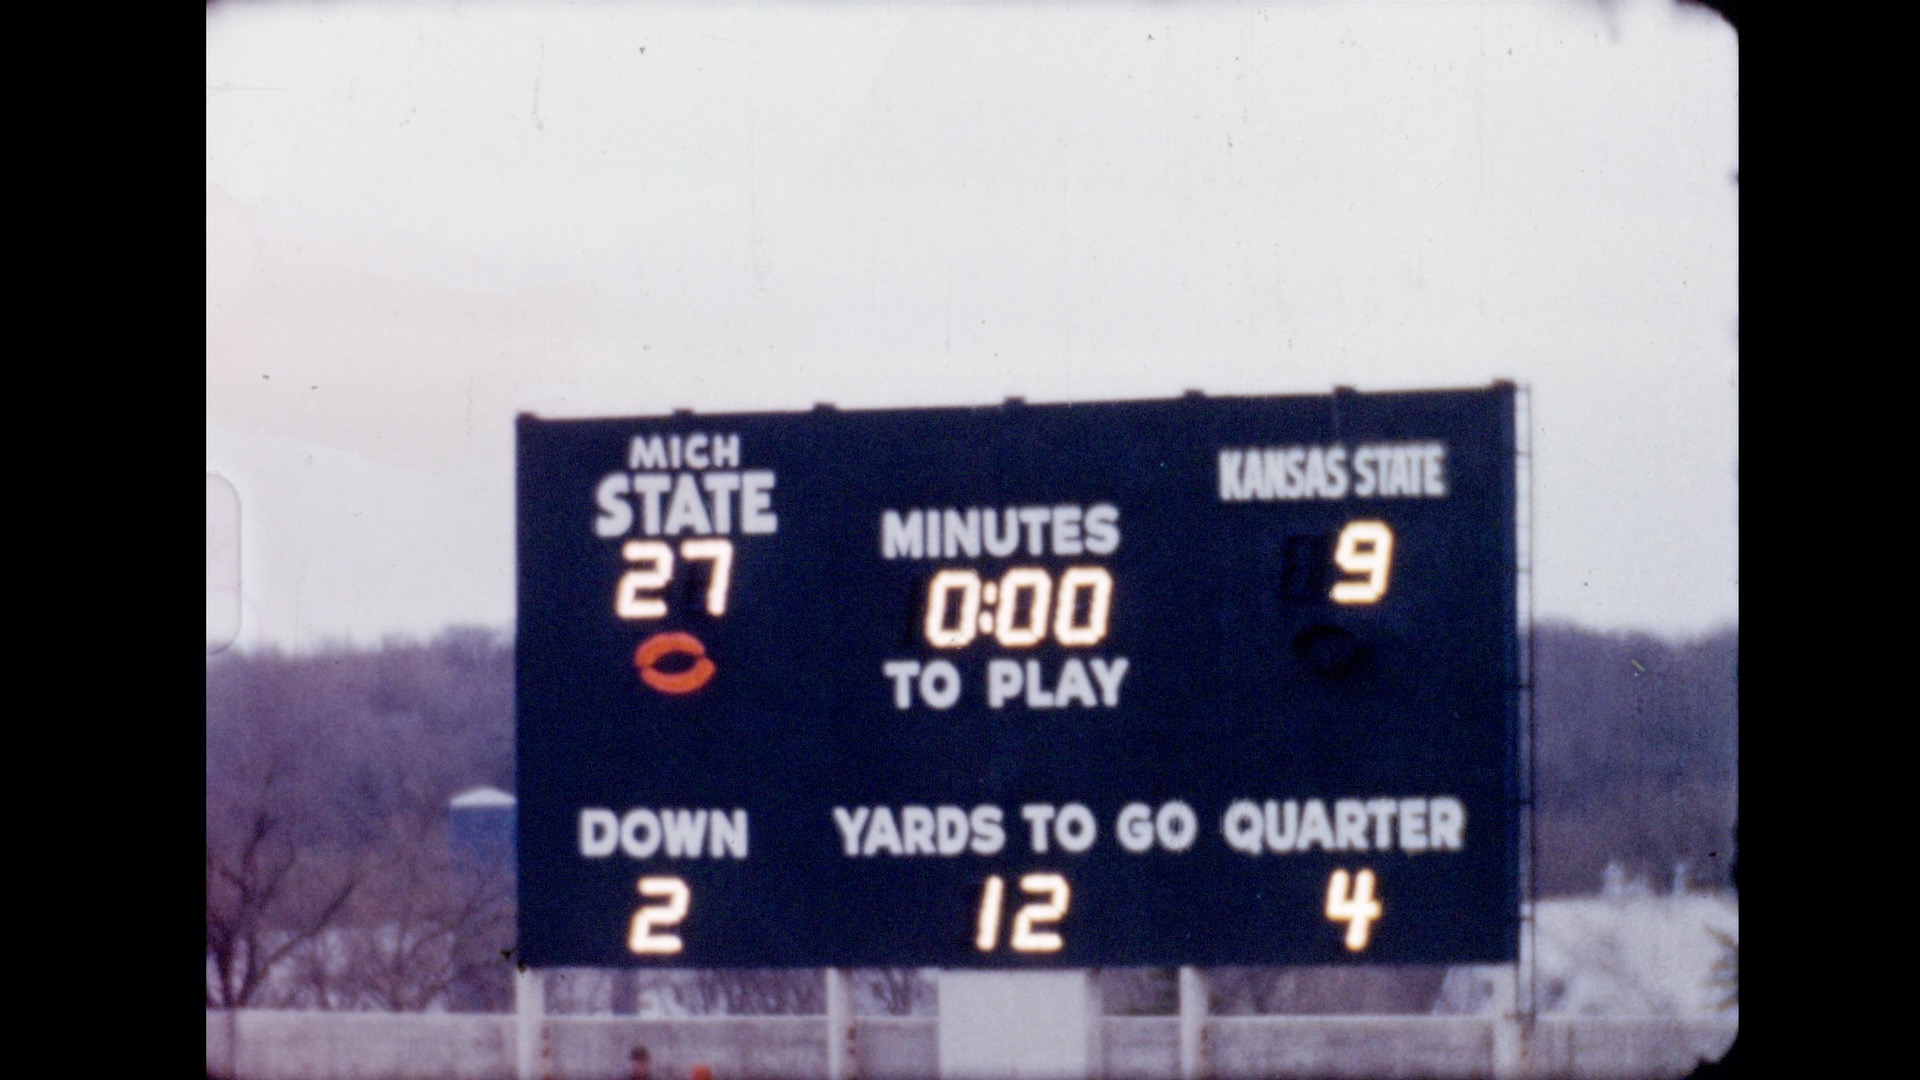 MSU Football vs. Kansas State, 1957